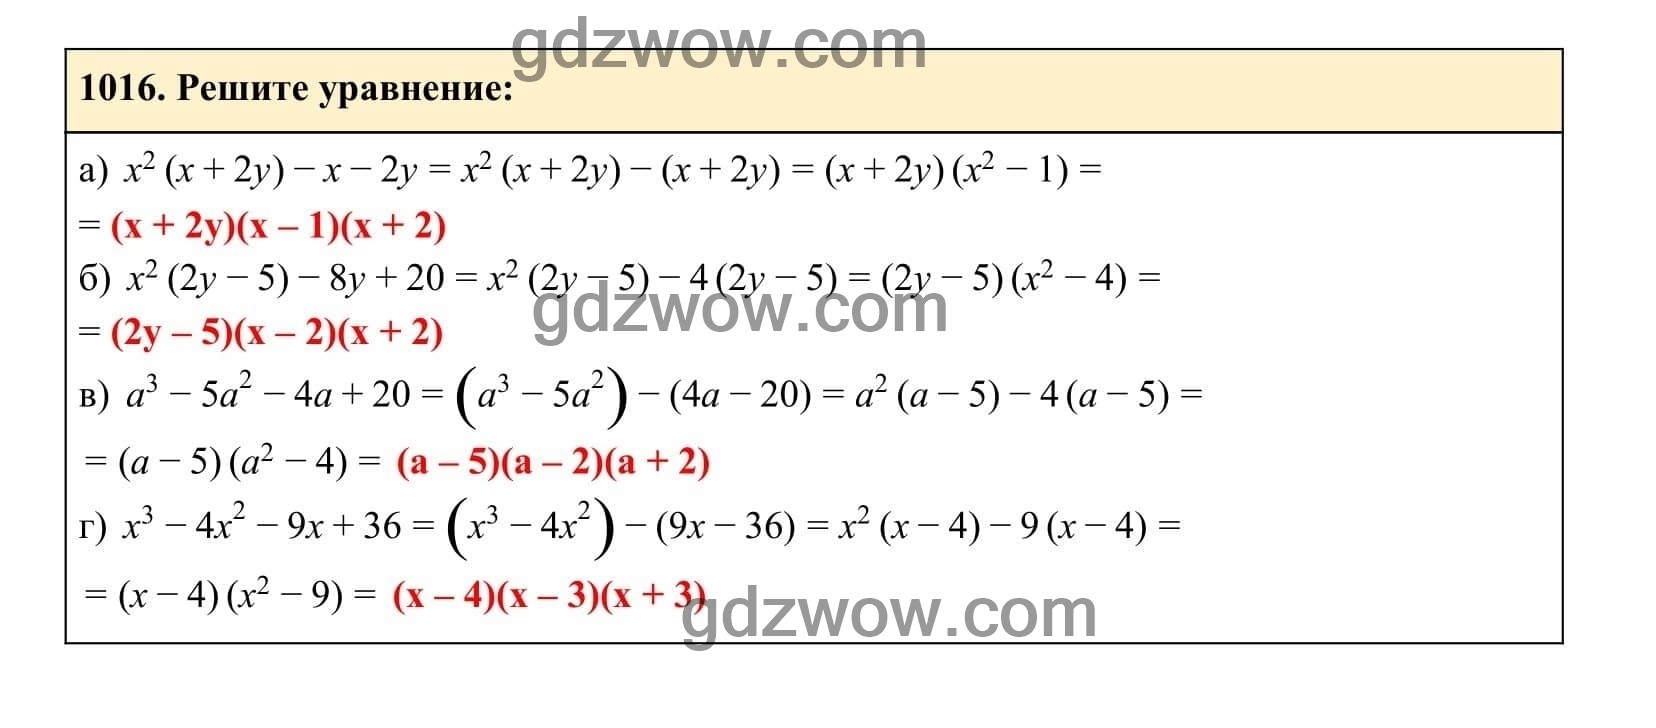 Упражнение 1016 - ГДЗ по Алгебре 7 класс Учебник Макарычев (решебник) - GDZwow